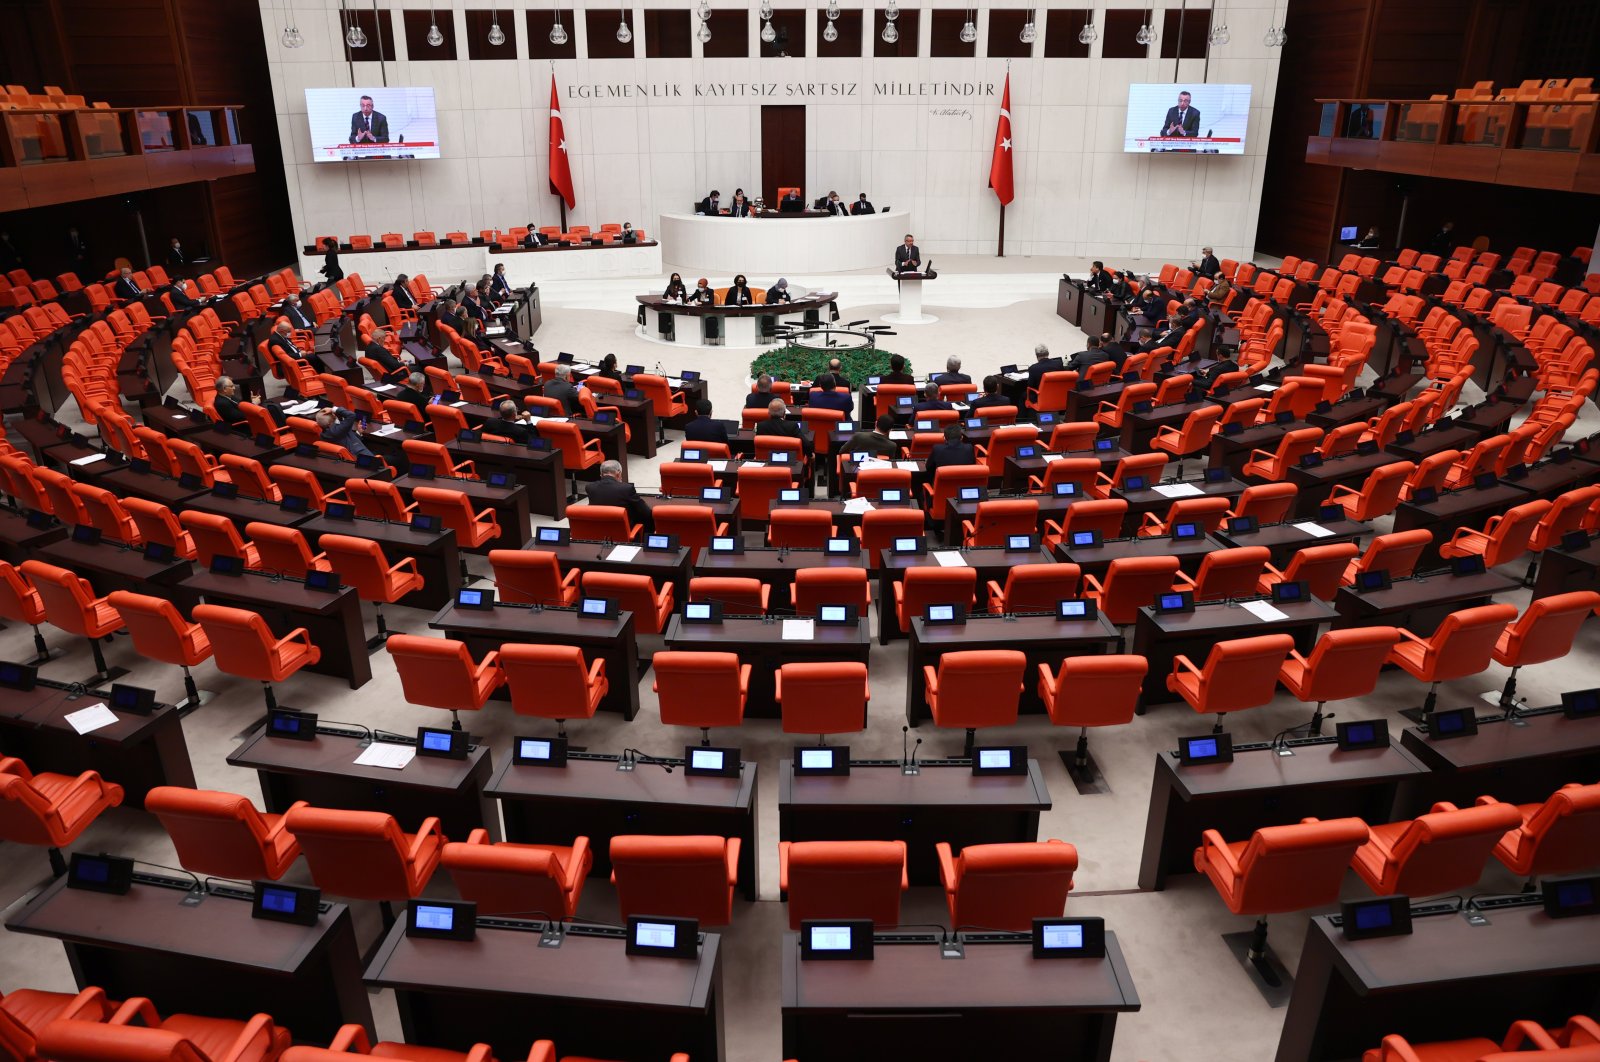 Partai AK, MHP mengumumkan rancangan undang-undang pemilu baru Turki